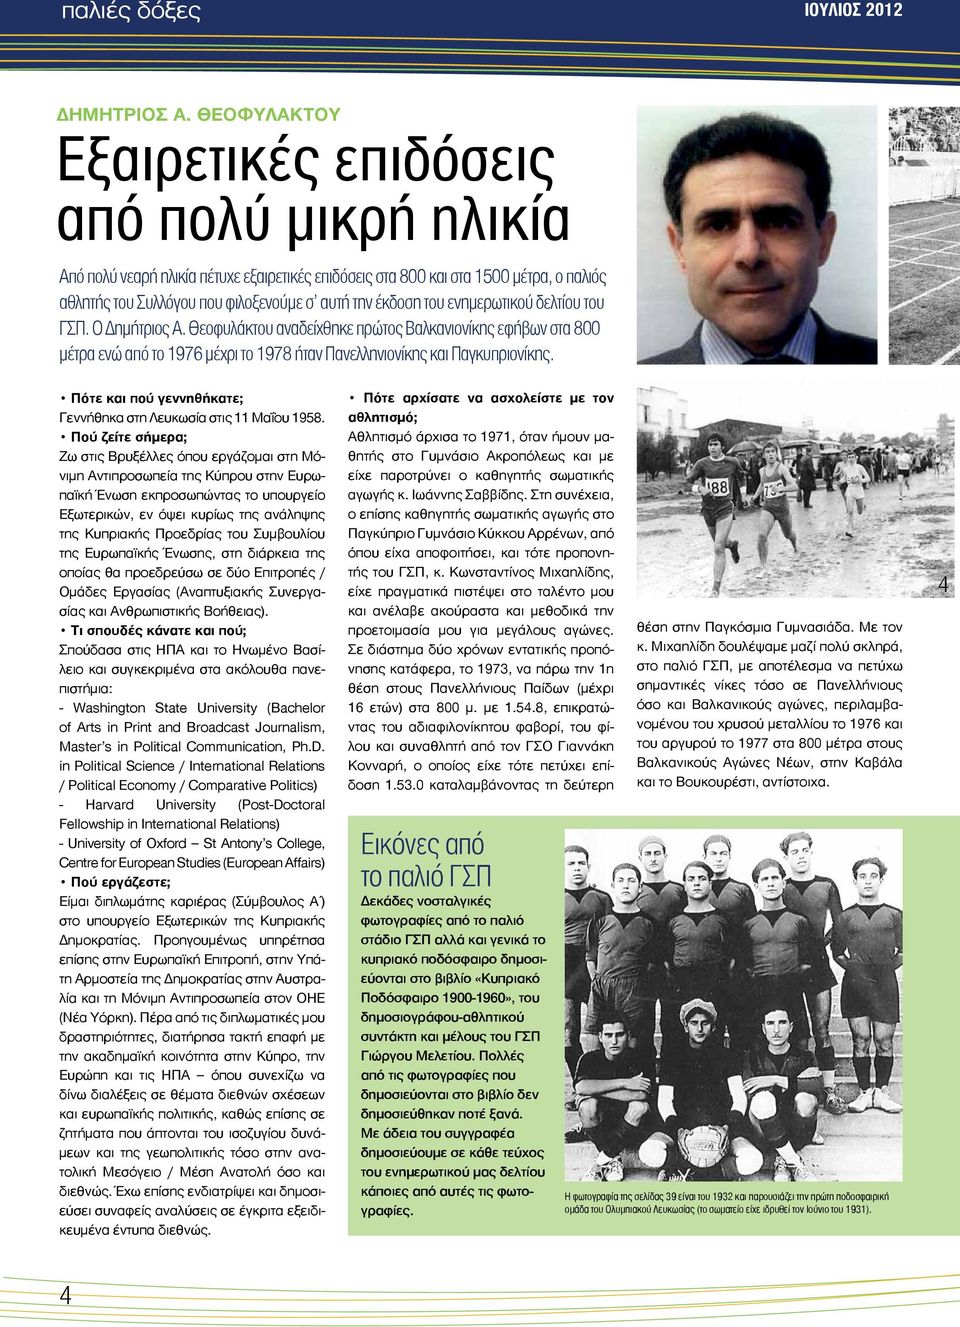 του ενημερωτικού δελτίου του ΓΣΠ. Ο Δημήτριος Α. Θεοφυλάκτου αναδείχθηκε πρώτος Βαλκανιονίκης εφήβων στα 800 μέτρα ενώ από το 1976 μέχρι το 1978 ήταν Πανελληνιονίκης και Παγκυπριονίκης.